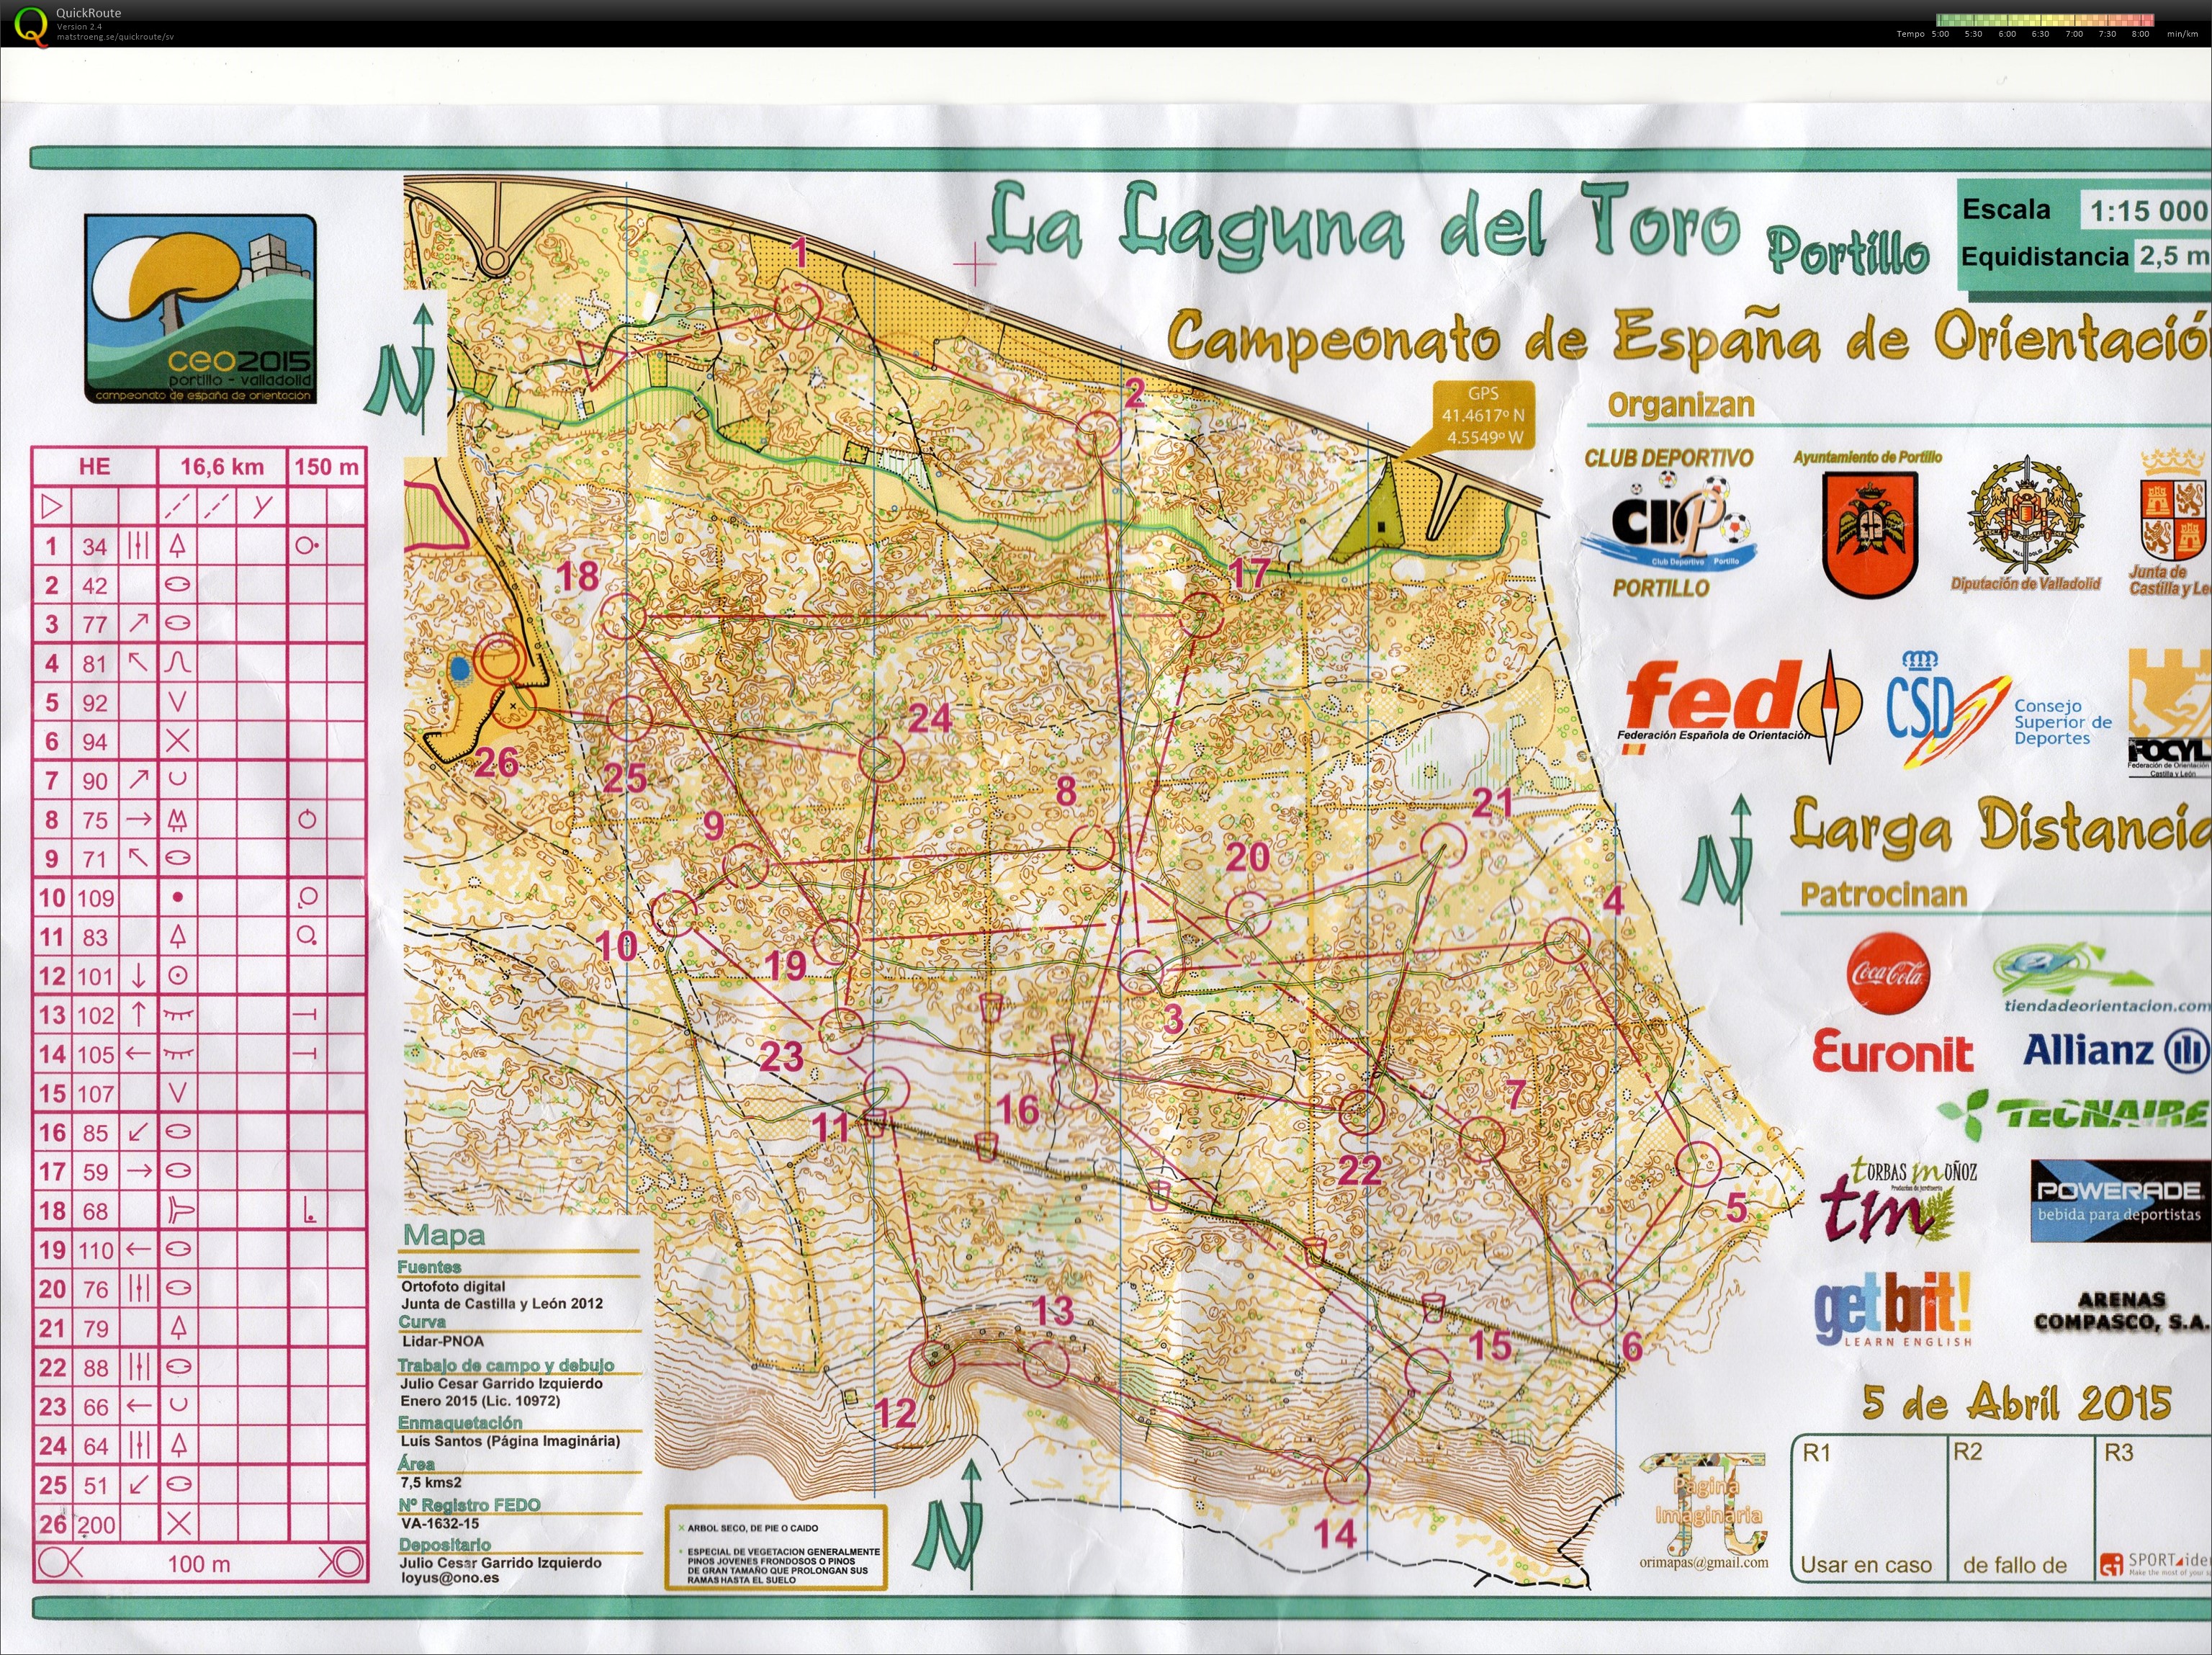 Campeonato de España de orientación (CEO)- Long (05-04-2015)